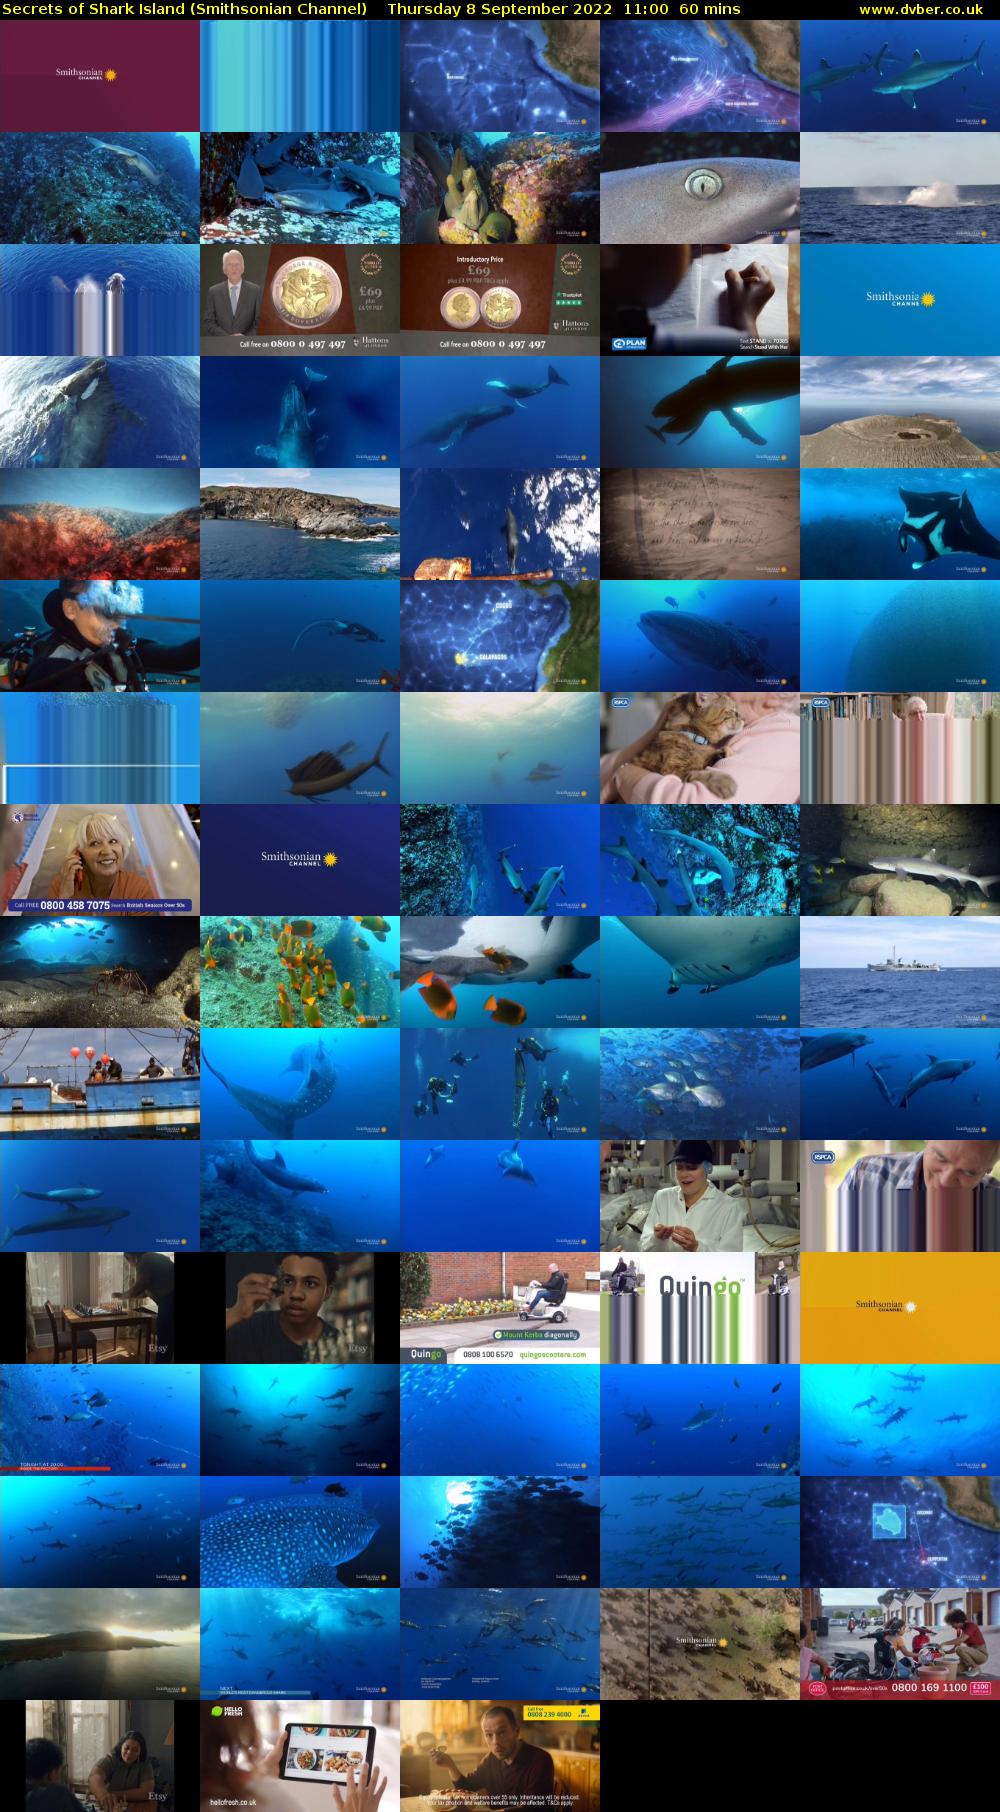 Secrets of Shark Island (Smithsonian Channel) Thursday 8 September 2022 11:00 - 12:00